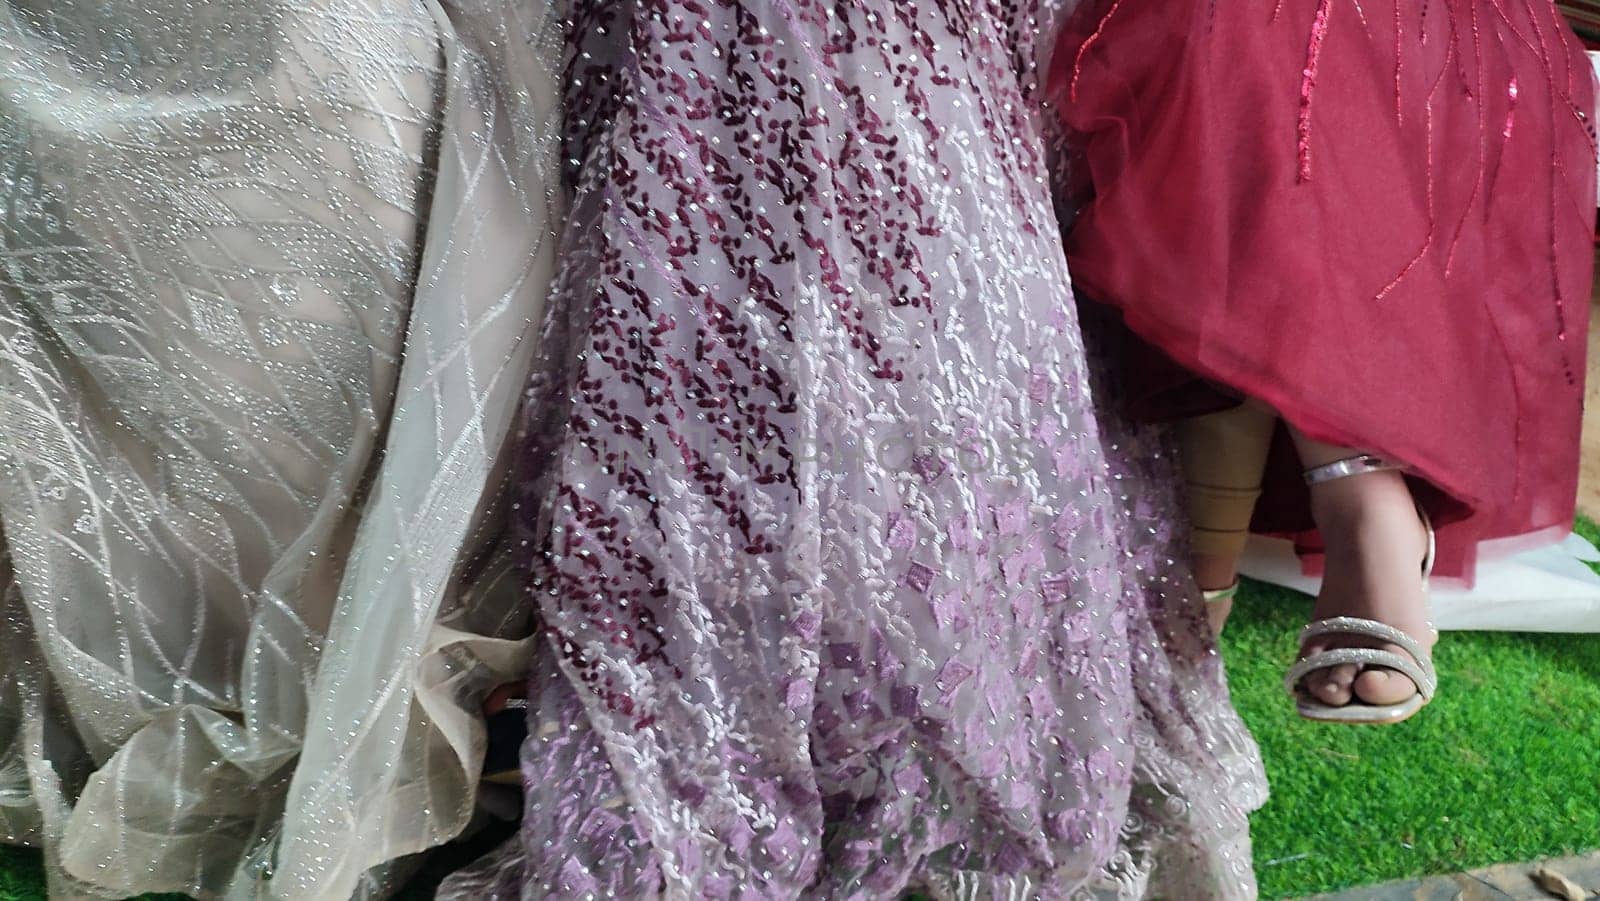 wedding dress, beautiful lace, purple hem fabric. High quality photo